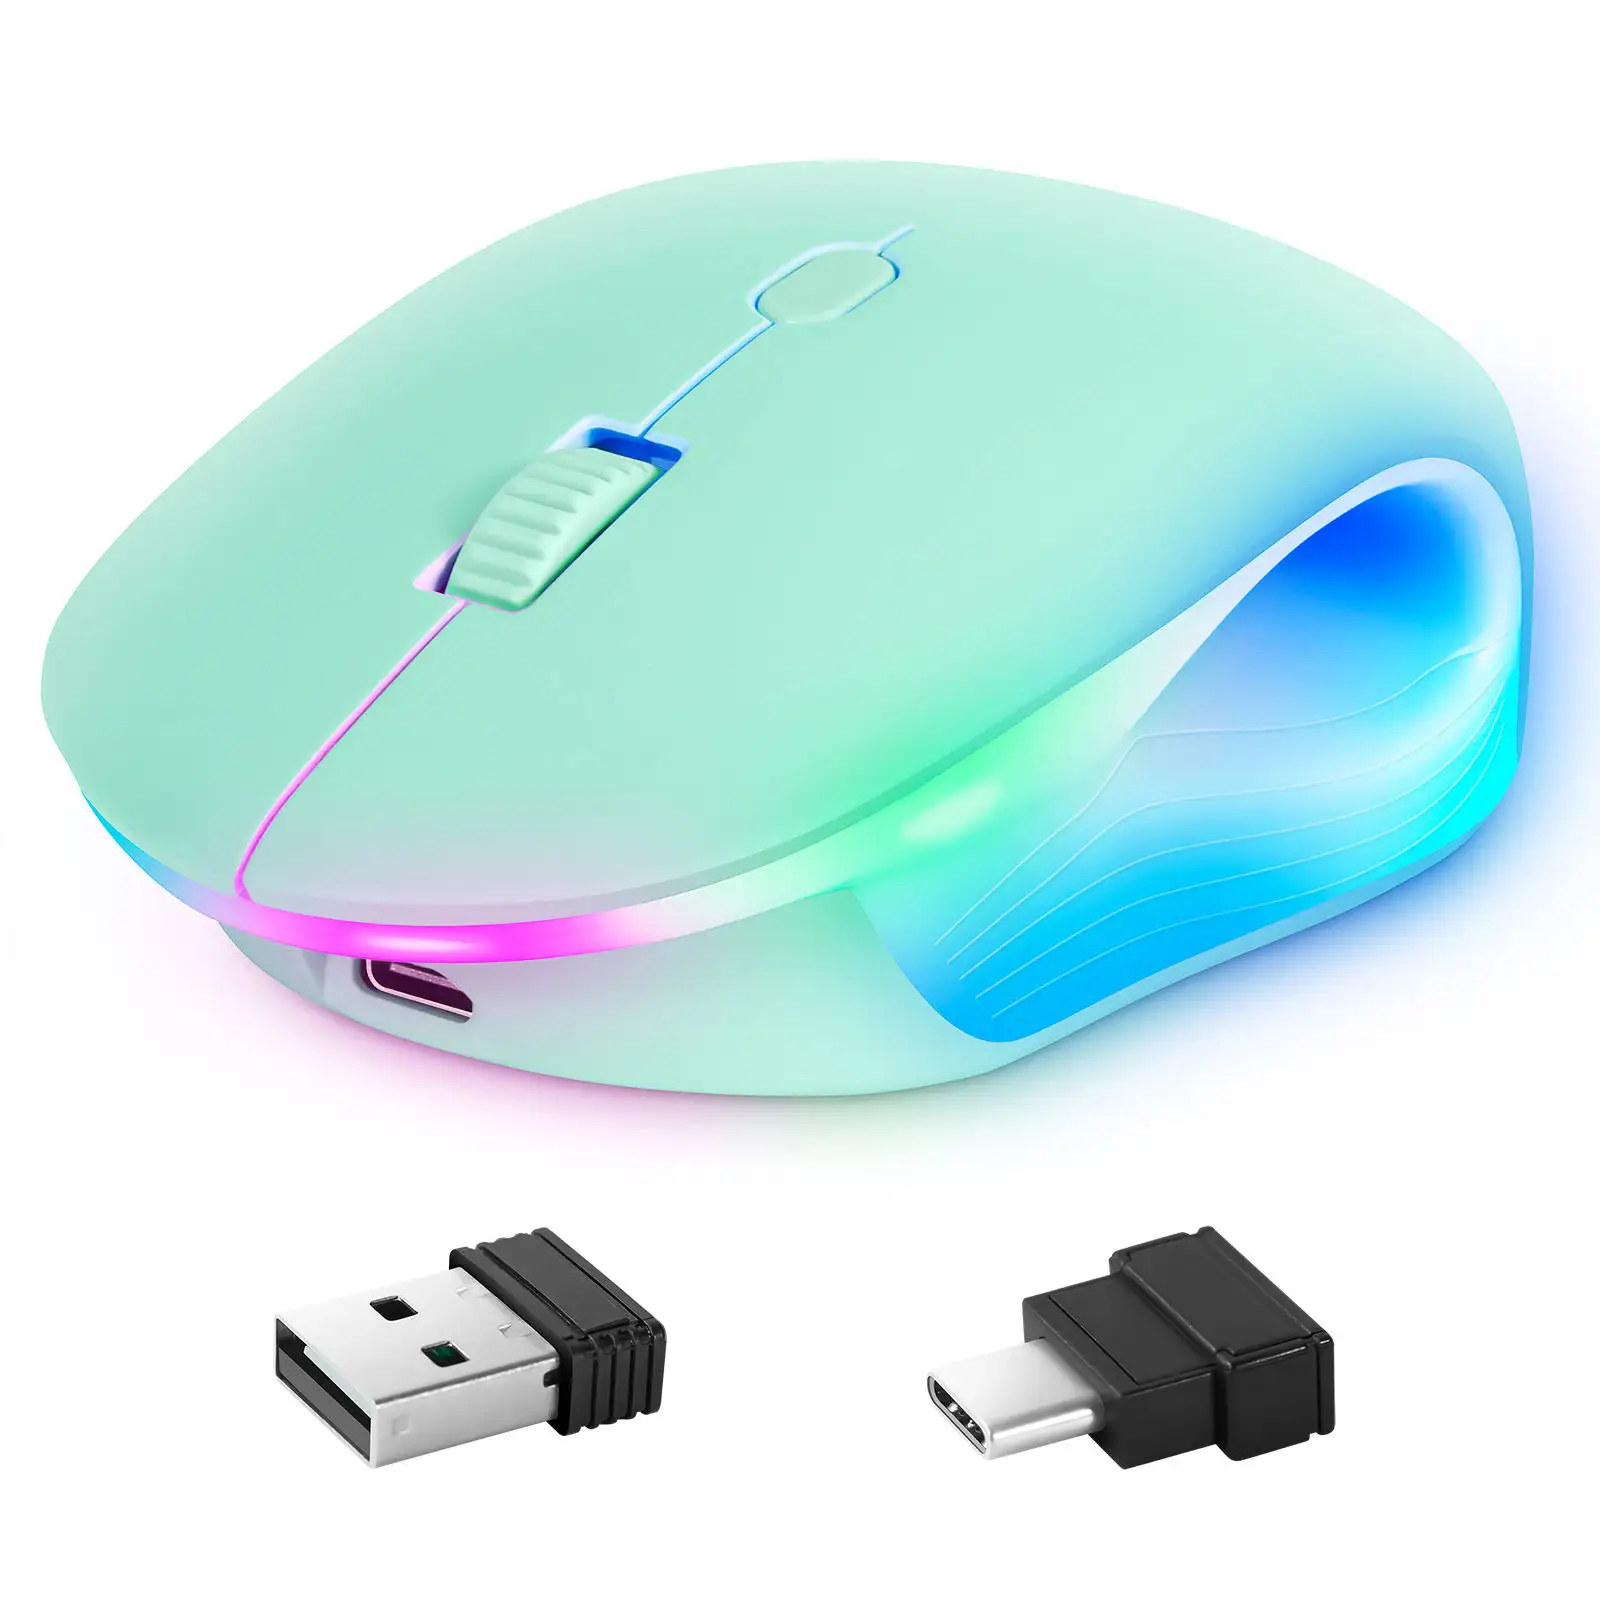 Горячая распродажа беспроводная мышь Type-c для офиса и домашнего использования, USB-приемник для беспроводной зарядки мыши, бесшумная беспроводная мышь